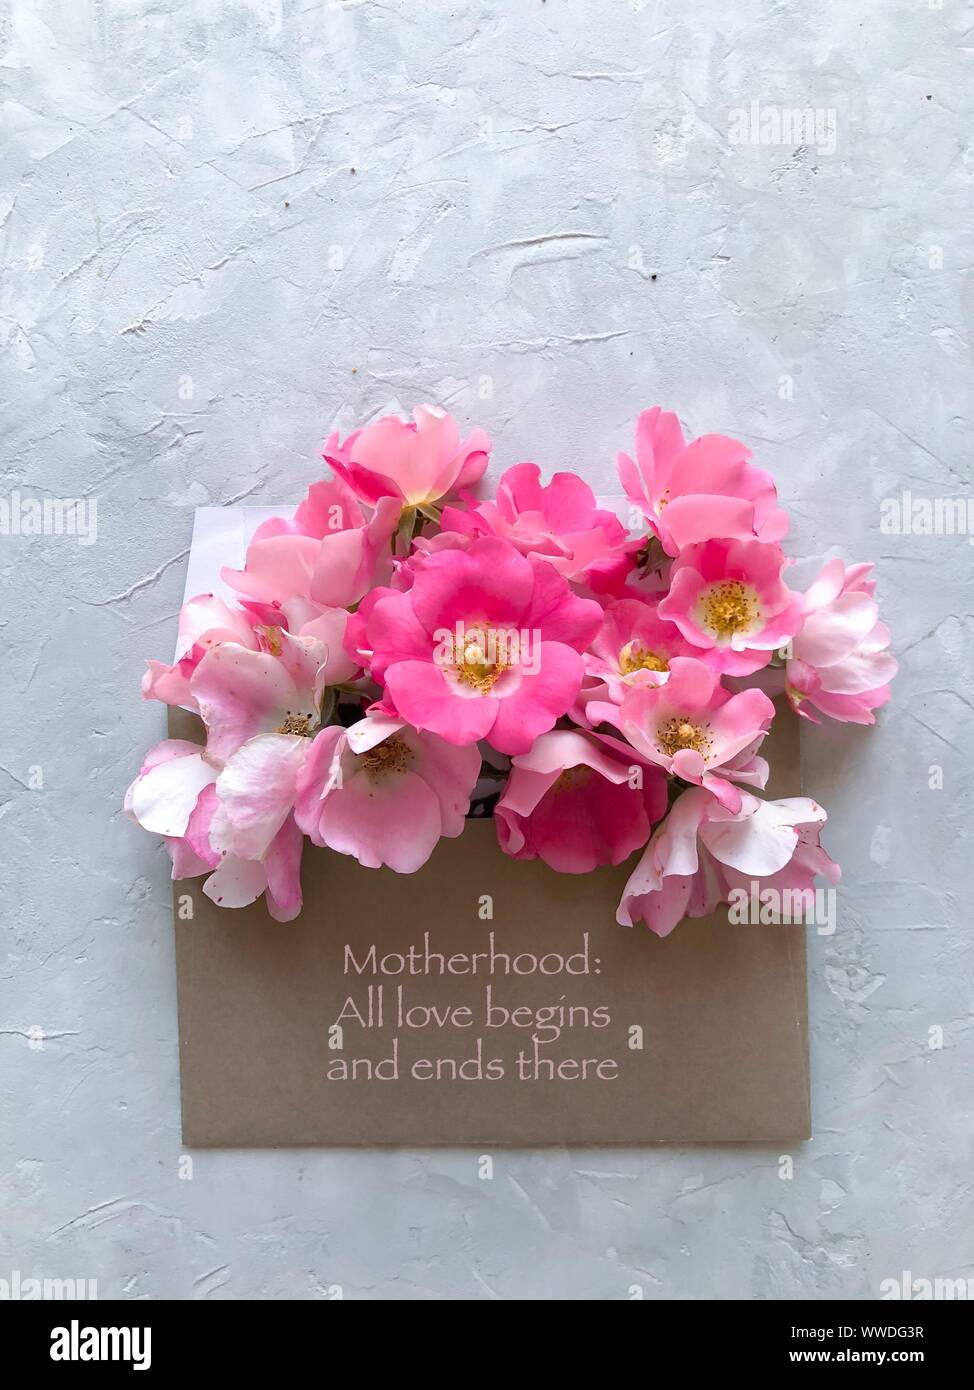 Fiori di colore rosa in una busta contrassegnata la maternità: tutti amore comincia e finisce lì Foto Stock